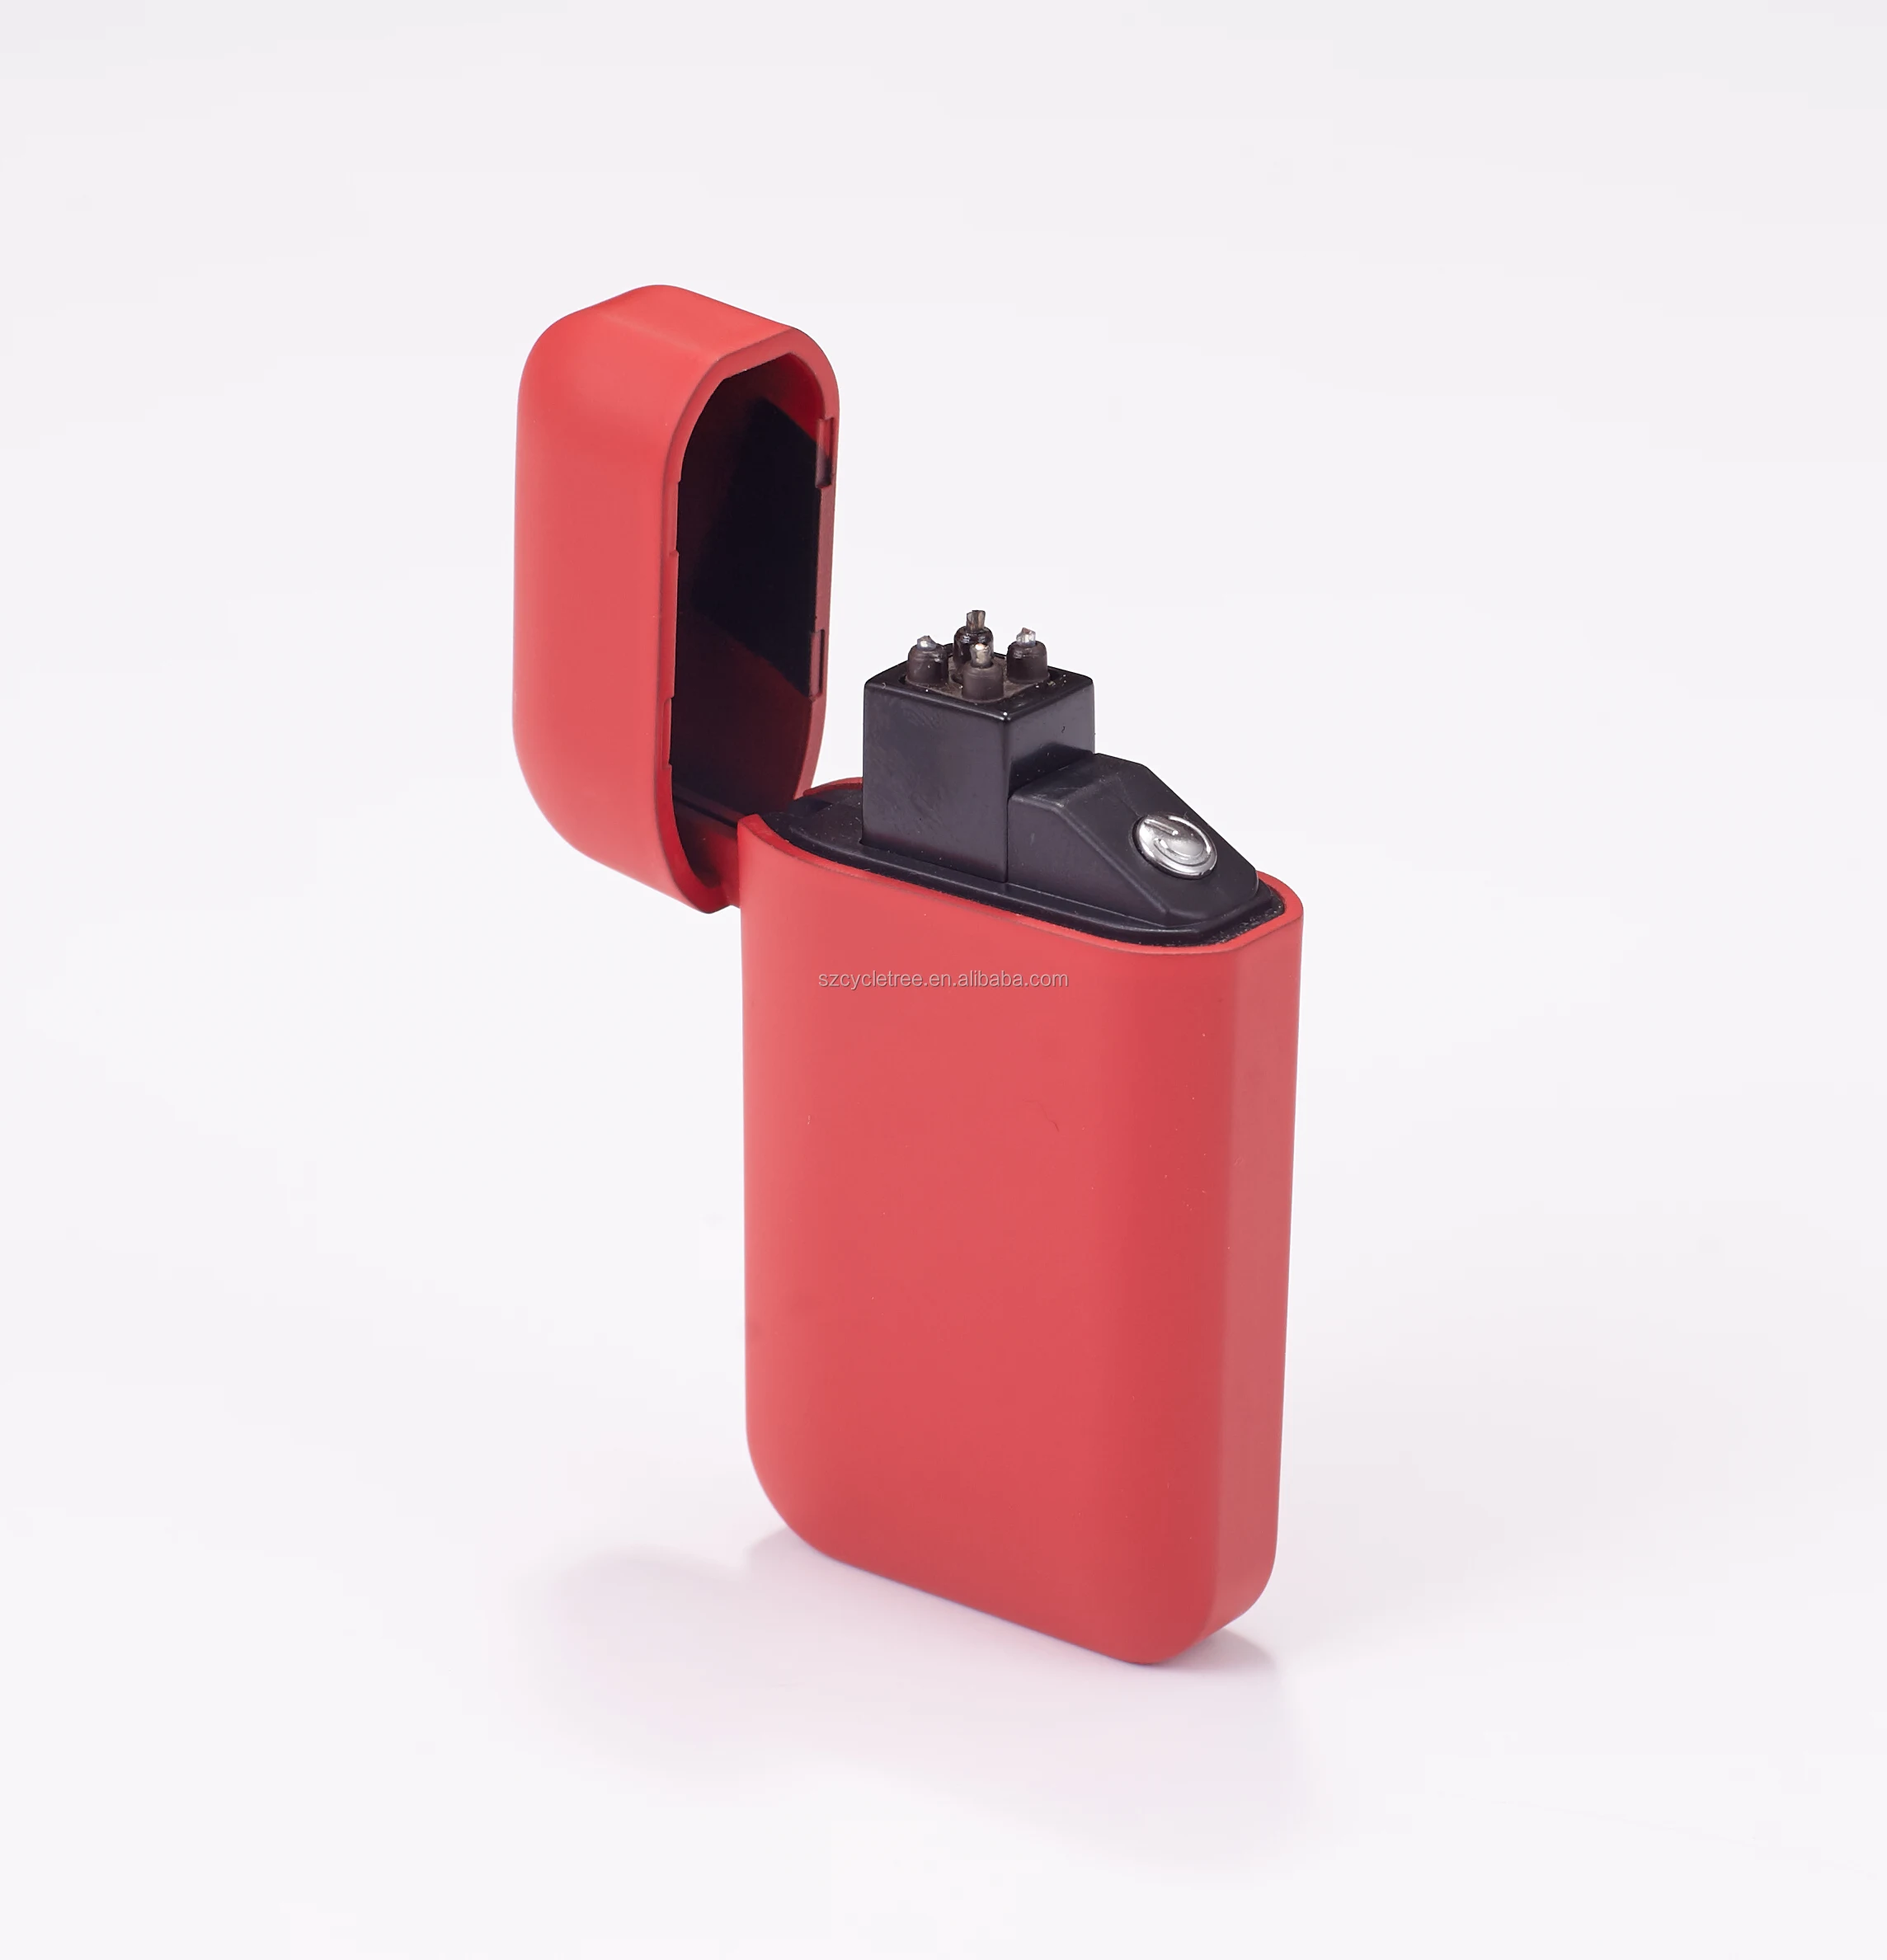 Китайские товары, оптовая продажа, самая дешевая металлическая ветрозащитная мини-зажигалка для сигар с двойной дугой и USB-разъемом с батареей